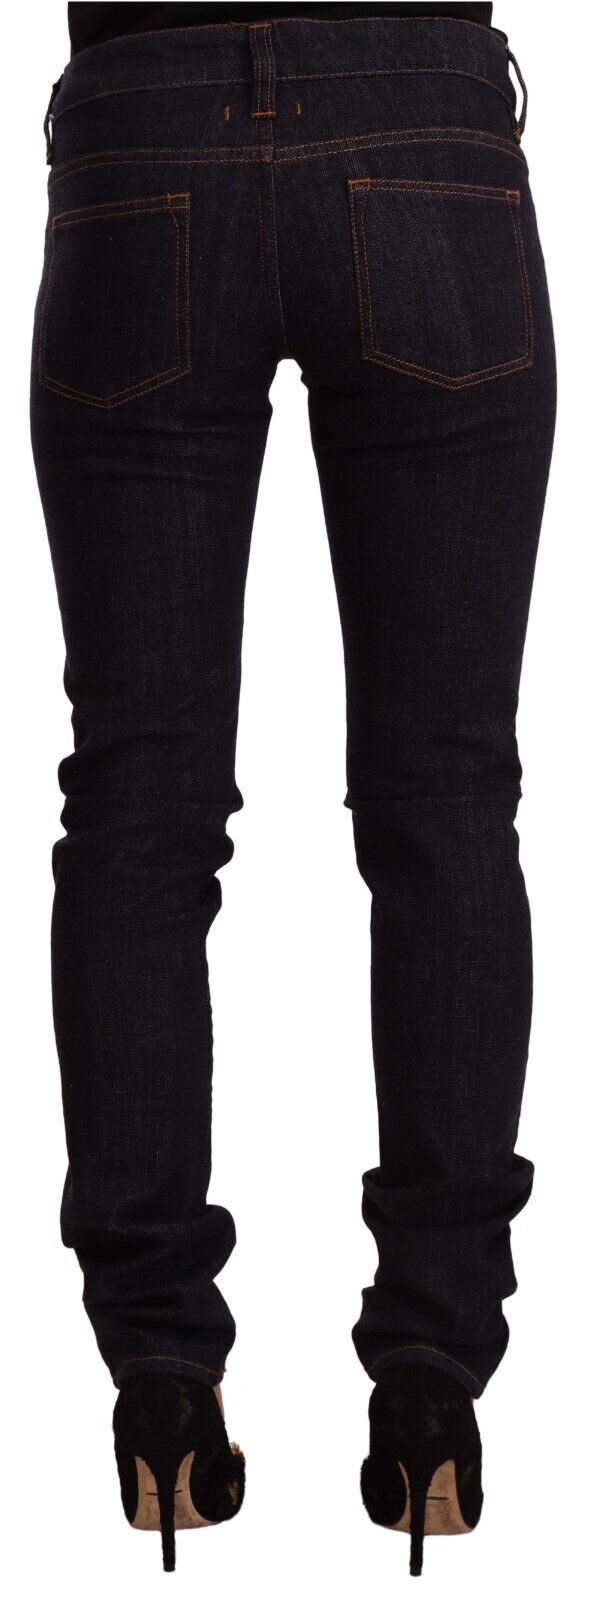 Chic Black Slim Fit Designer Jeans